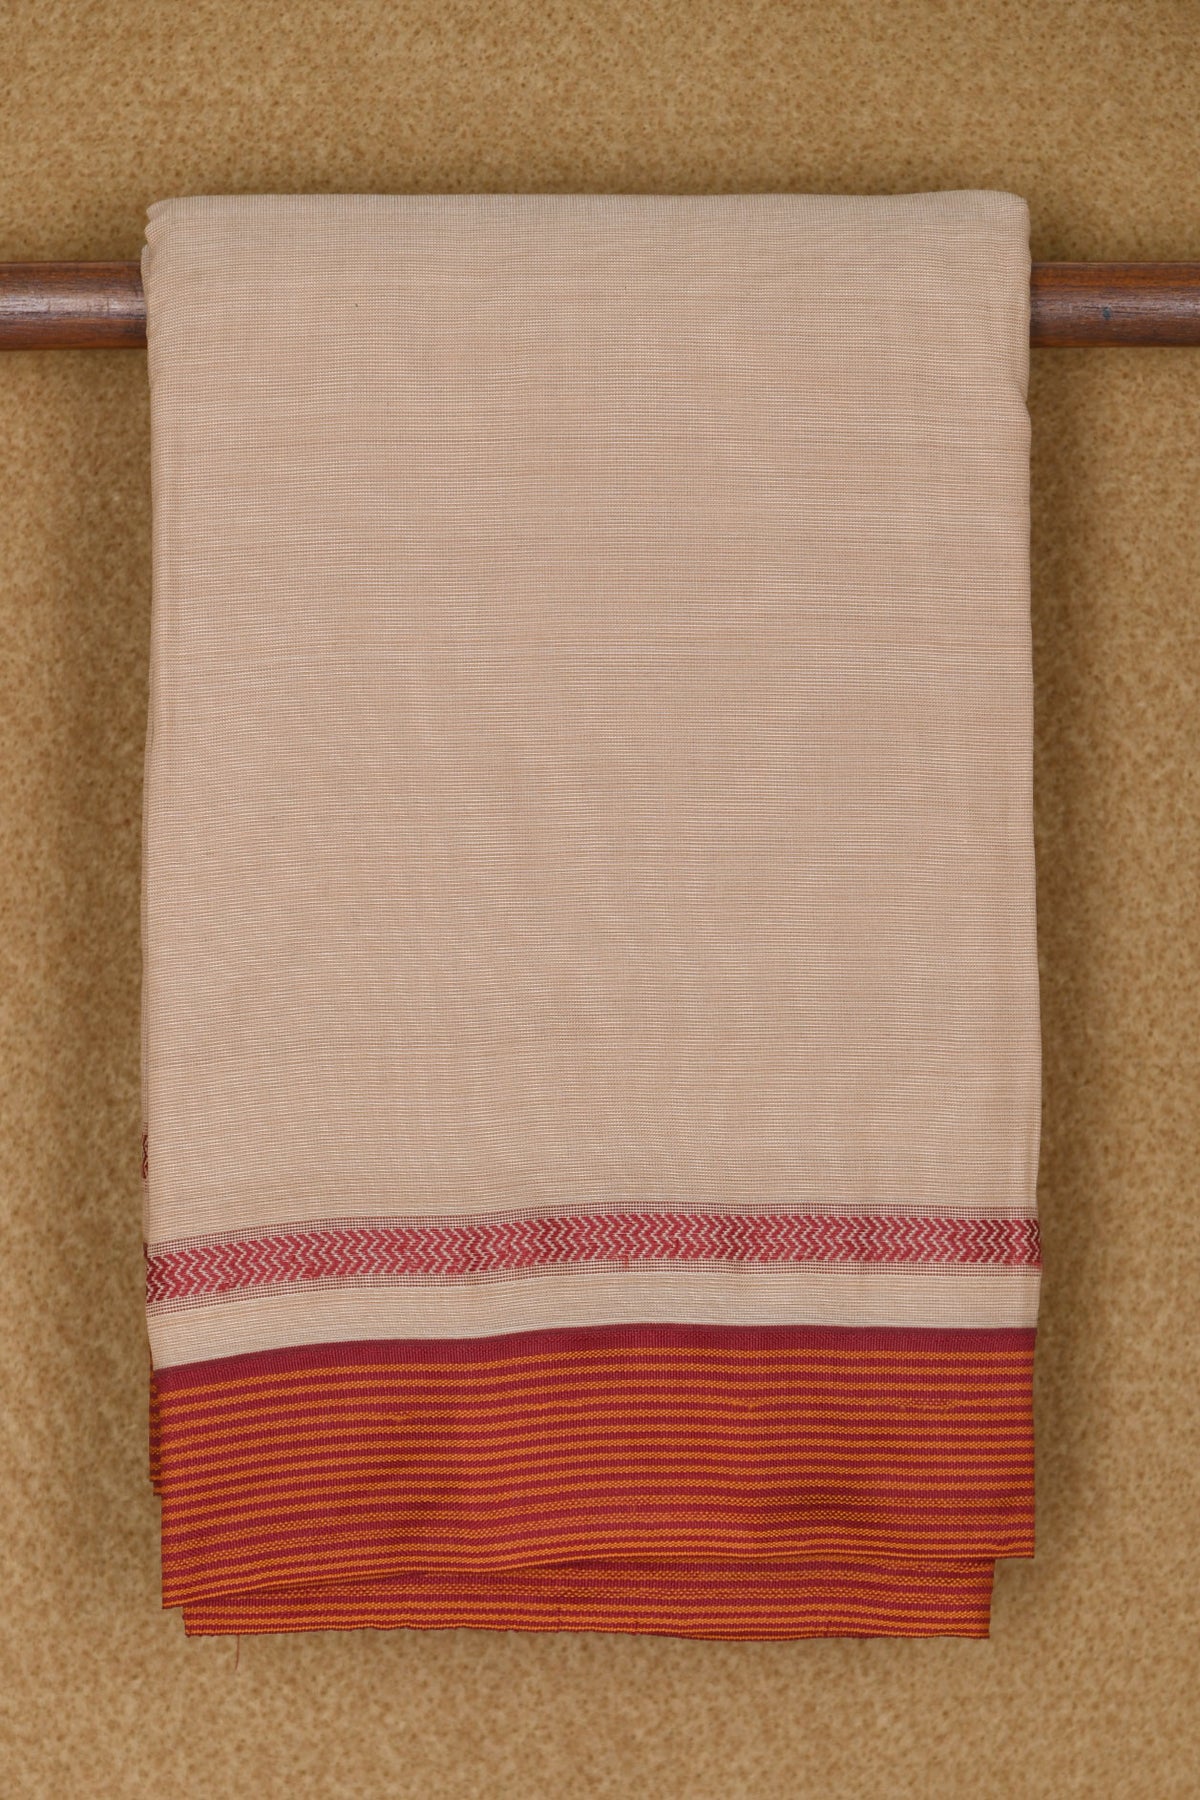 Stripes Border In Plain Cream Color Semi Dharwad Cotton Saree